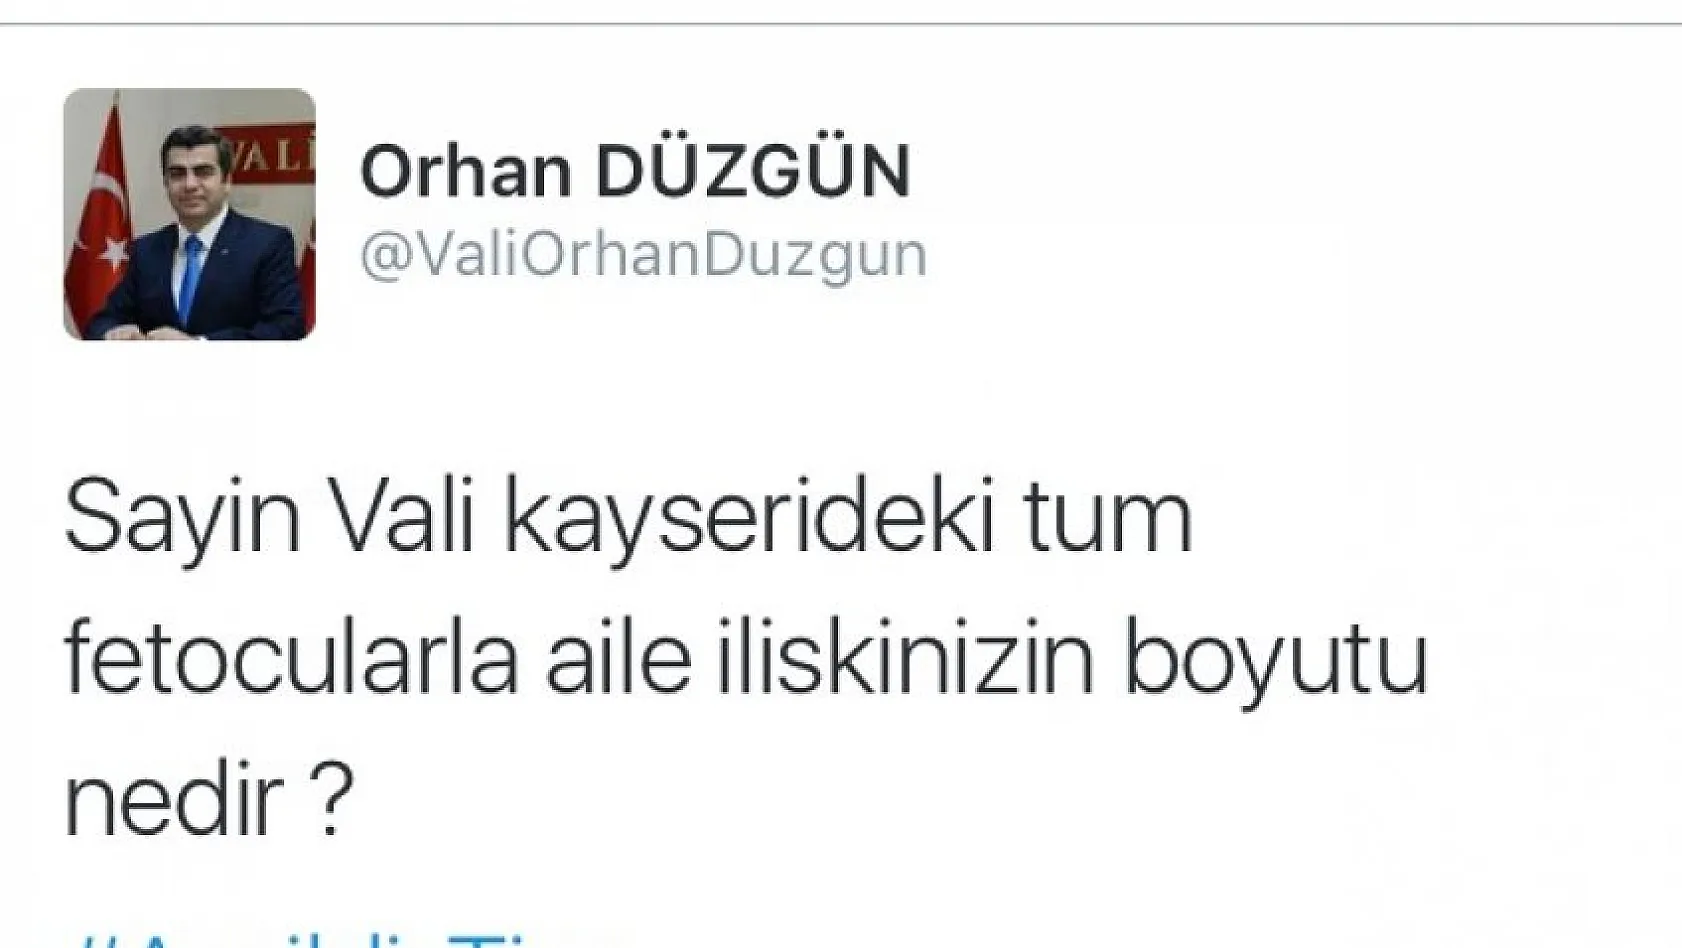 Kayseri'nin eski Valisi'nin Twitter hesabı da hacklendi